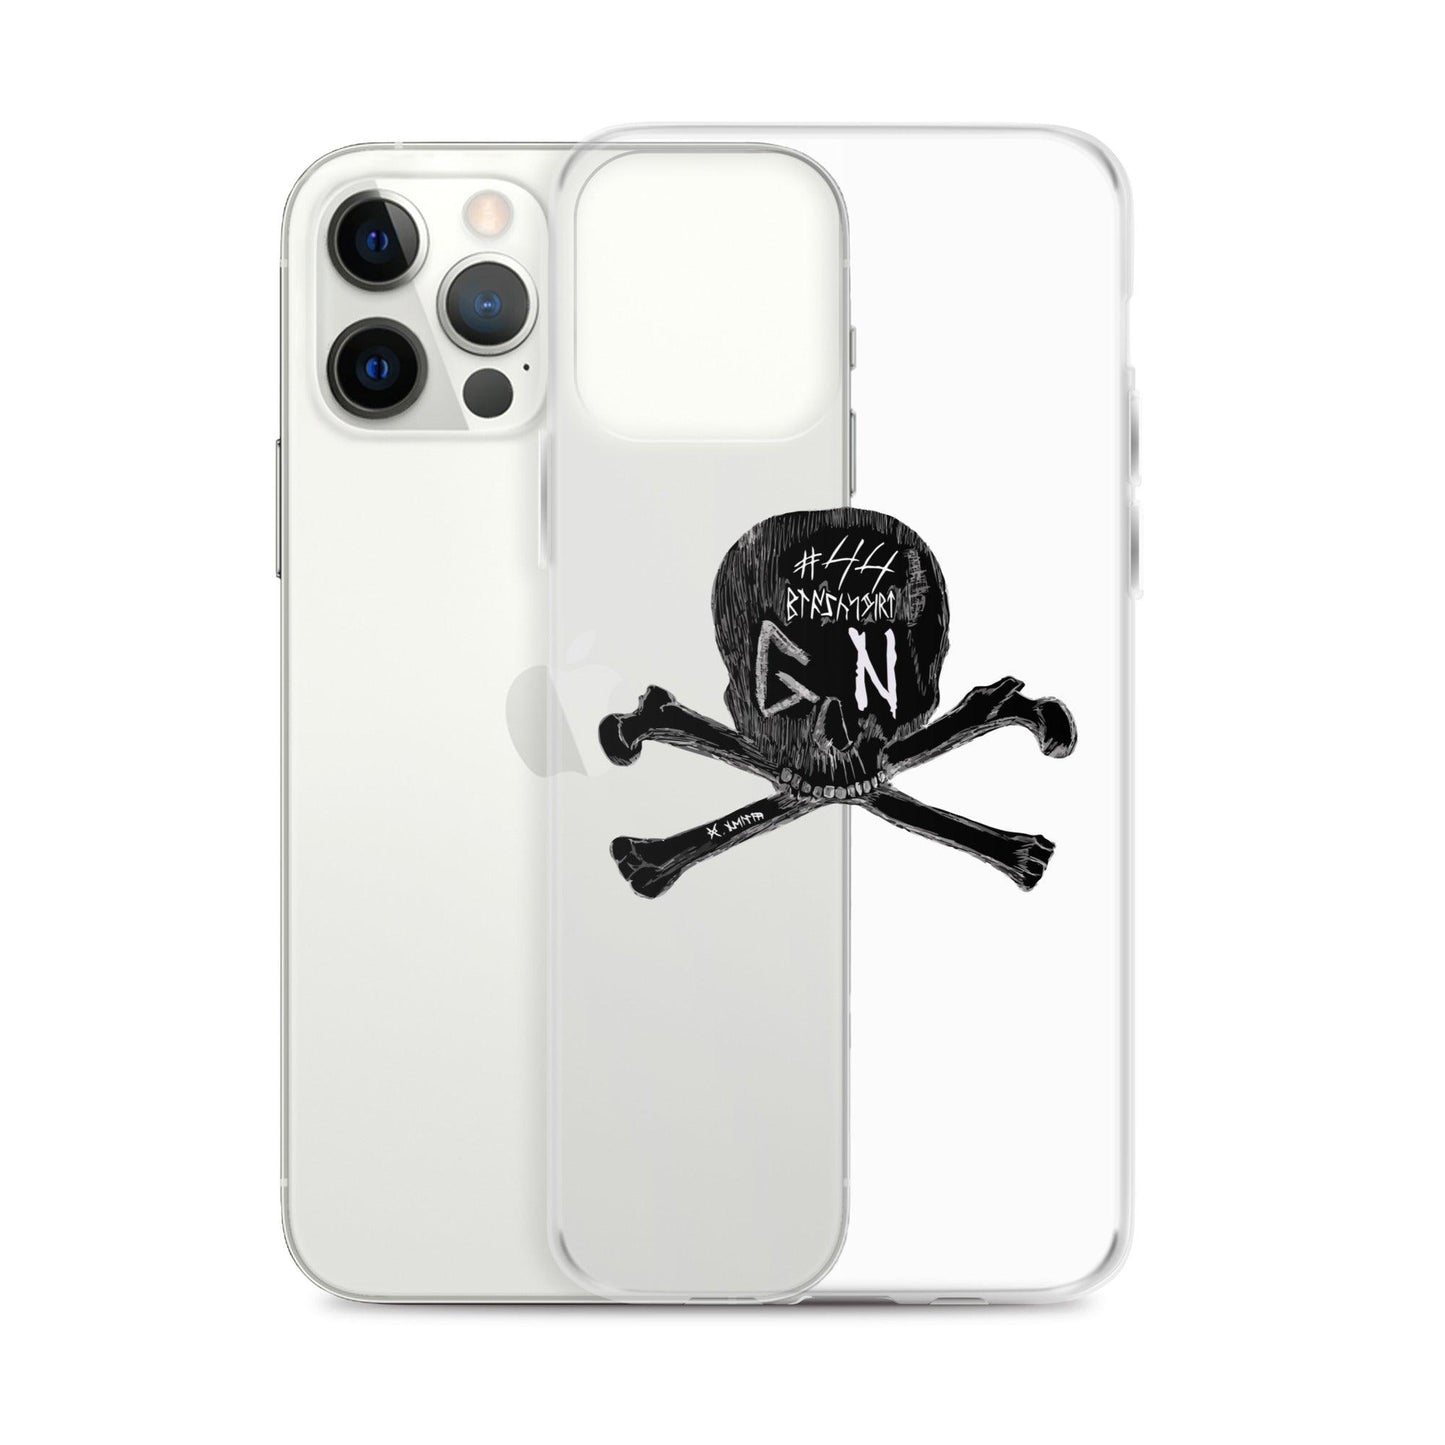 Garrett Nelson "GN44" iPhone Case - Fan Arch